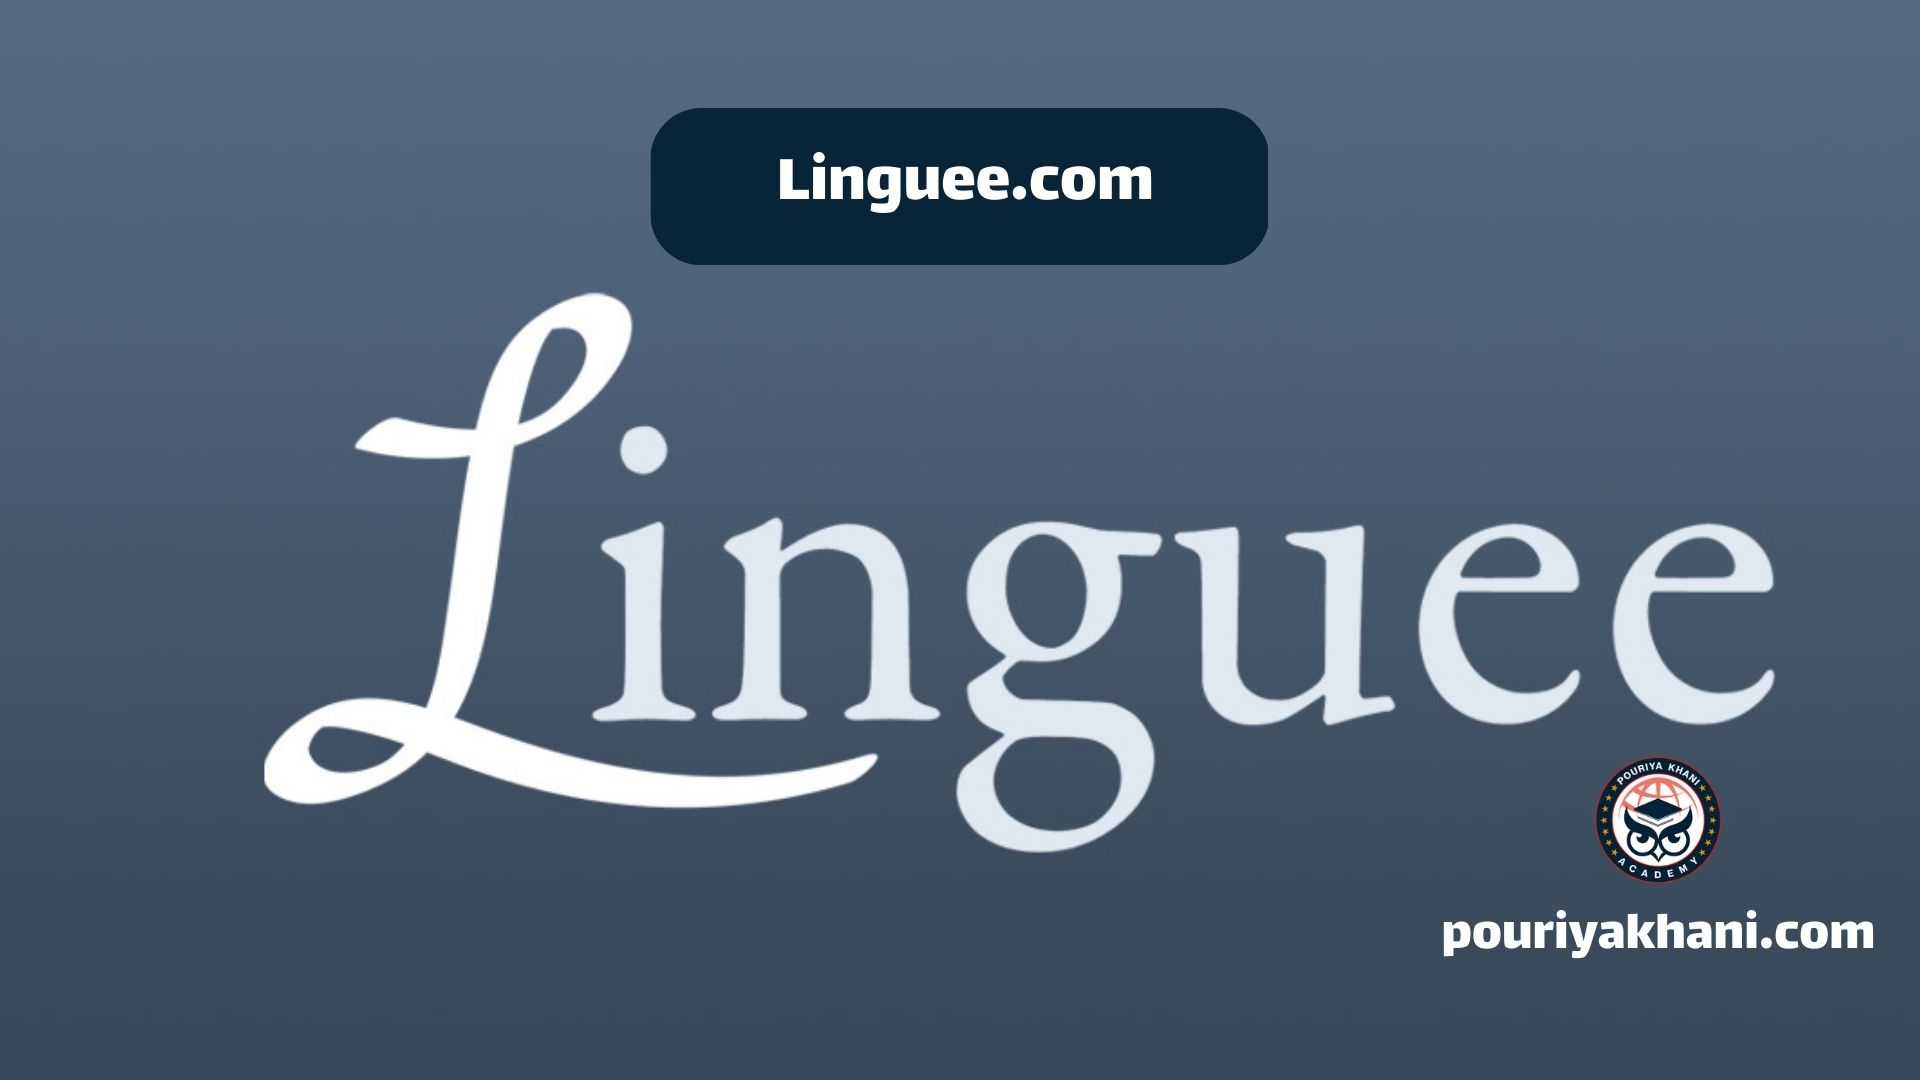 Linguee.com